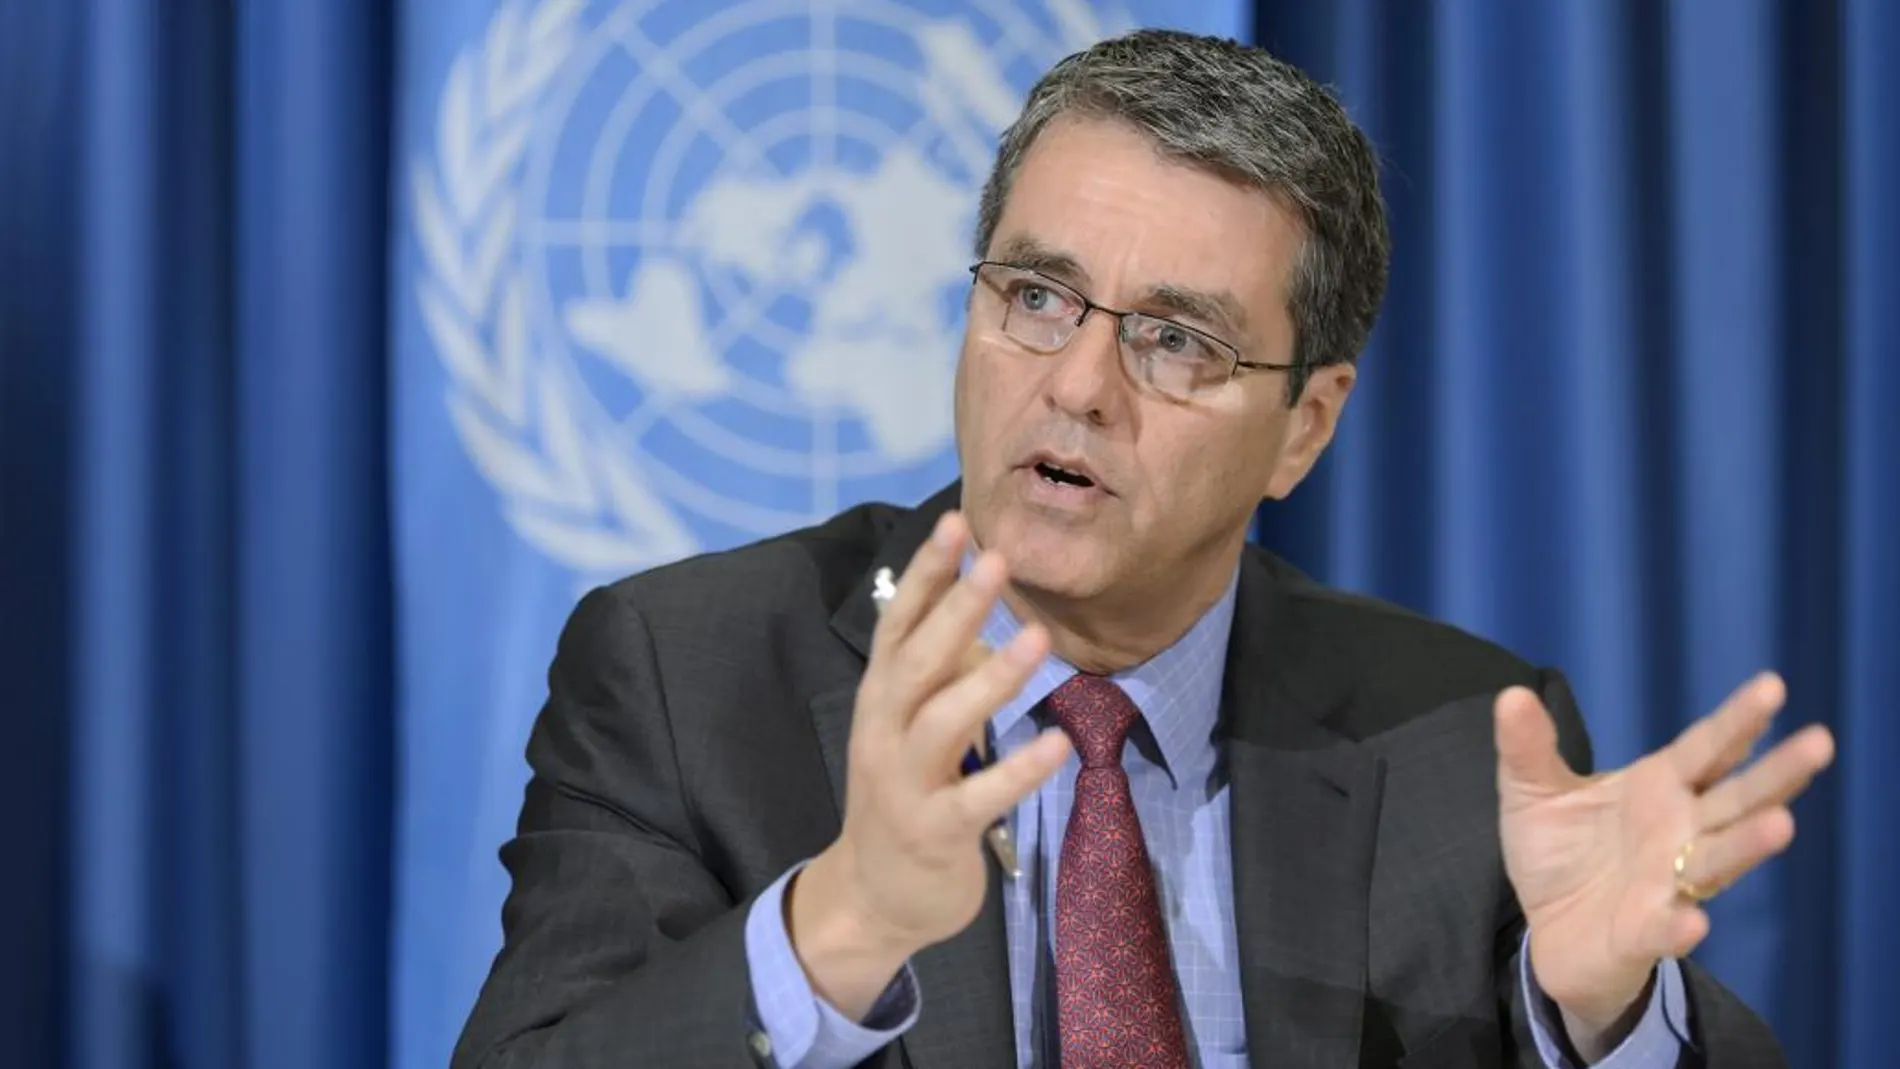 El director general de la Organización Mundial del Comercio (OMC), Roberto Azevedo, da una rueda de prensa para repasar las negociaciones multilaterales en marcha en su institución